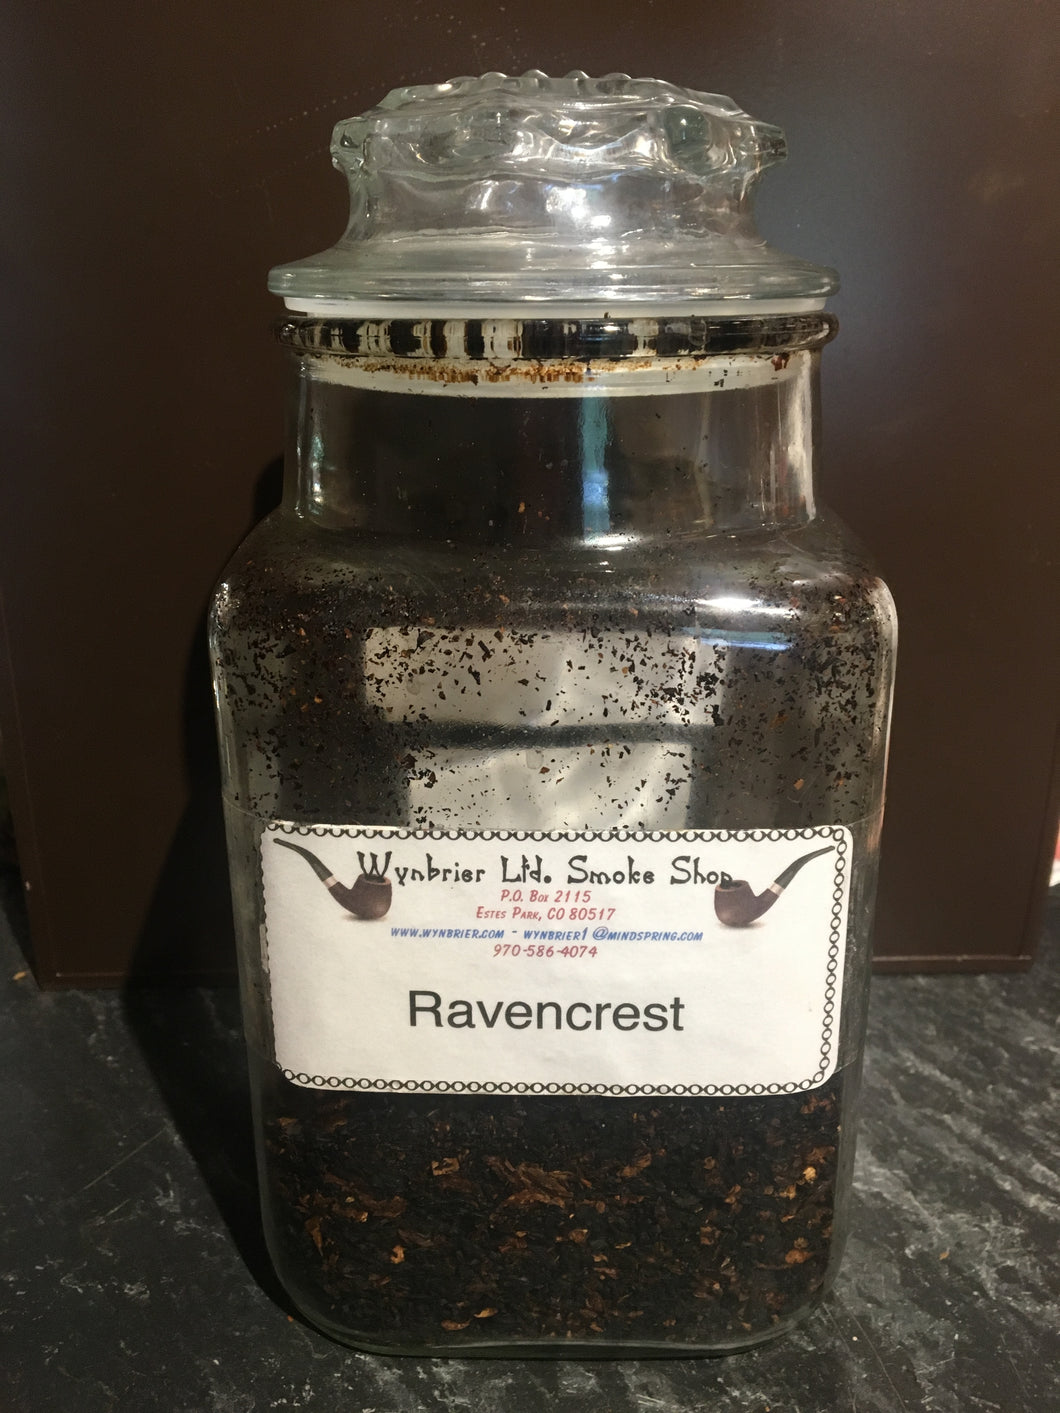 Ravencrest - Pipe Tobacco